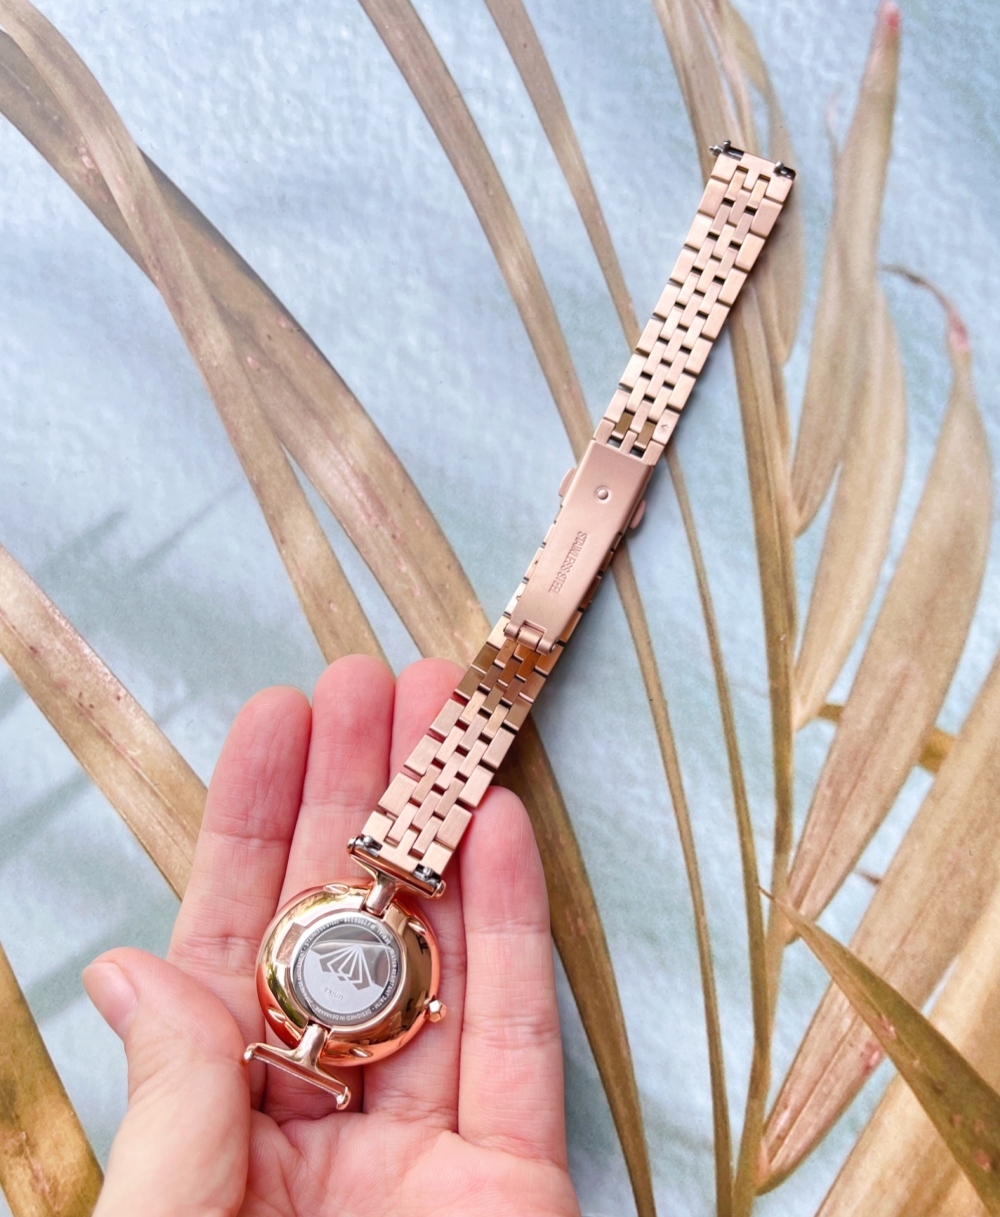 【穿搭】nordgreen丹麥設計文青錶款-The UNIKA 星空錶盤冬季穿搭亮點